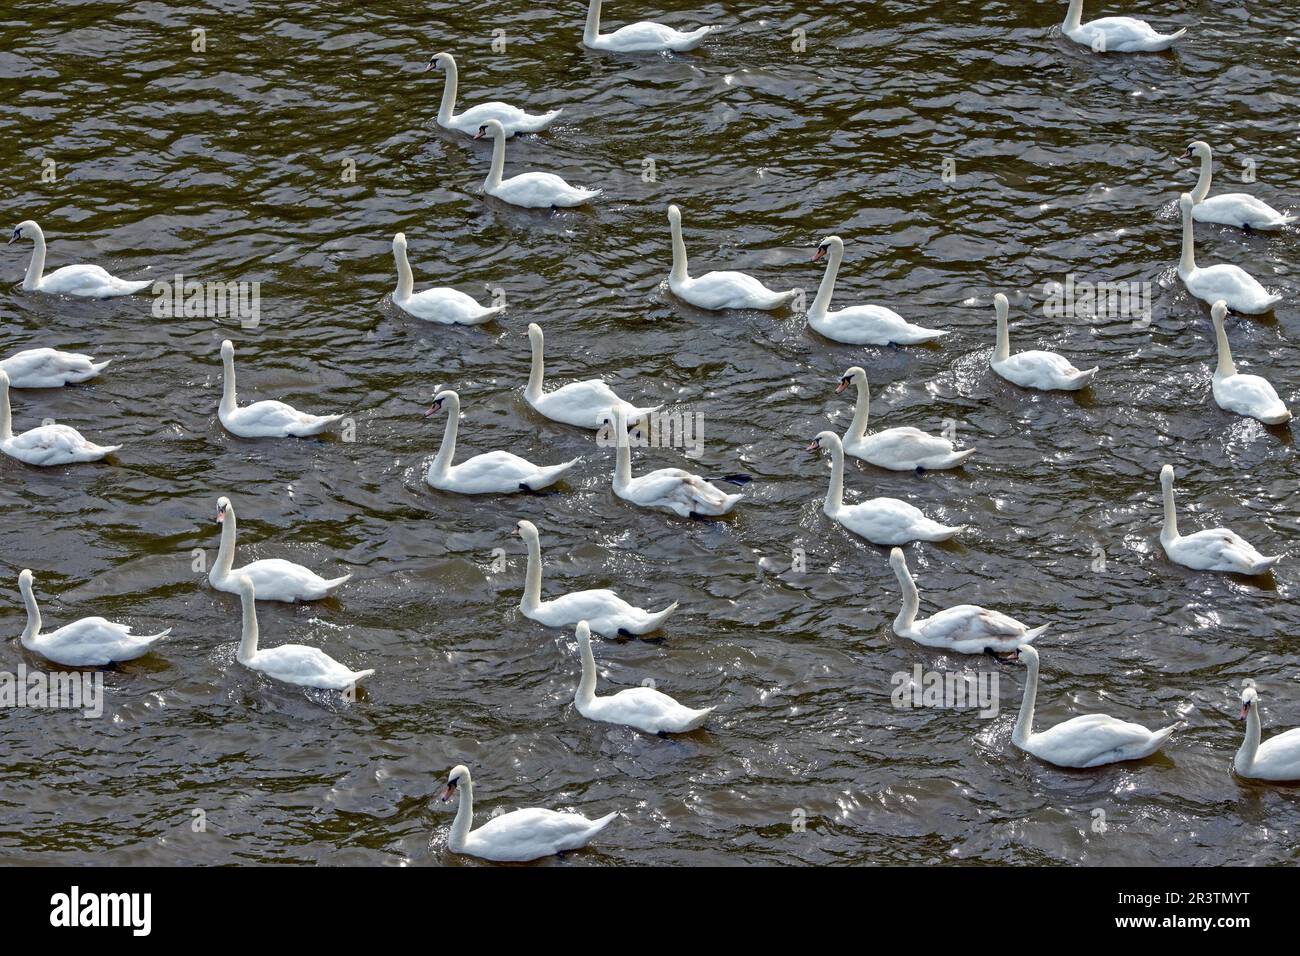 Un grand nombre de cygnes blancs sur un lac Banque D'Images